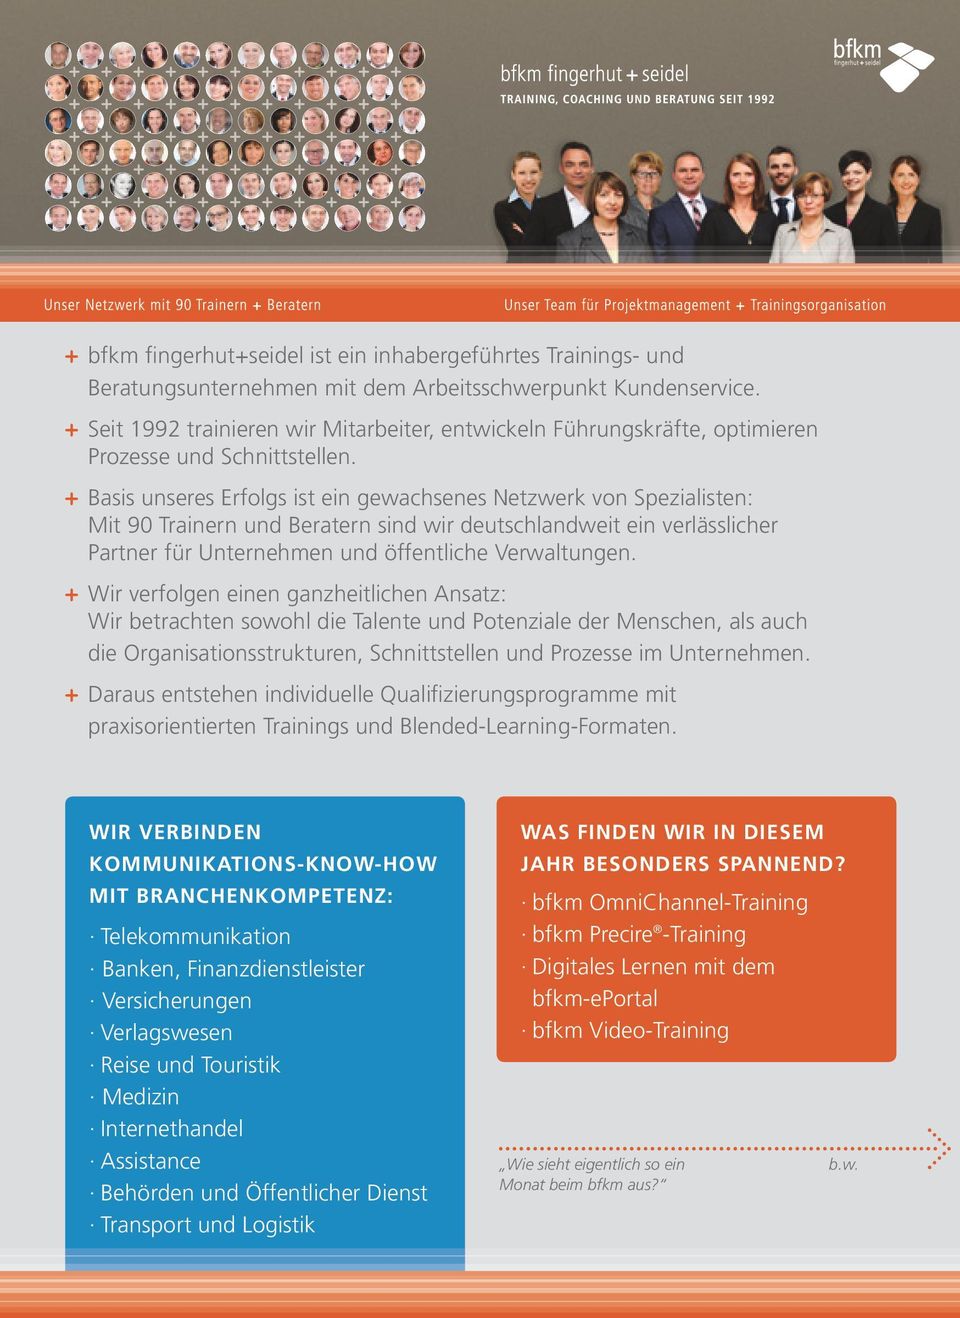 + Basis unseres Erfolgs ist ein gewachsenes Netzwerk von Spezialisten: Mit 90 Trainern und Beratern sind wir deutschlandweit ein verlässlicher Partner für Unternehmen und öffentliche Verwaltungen.